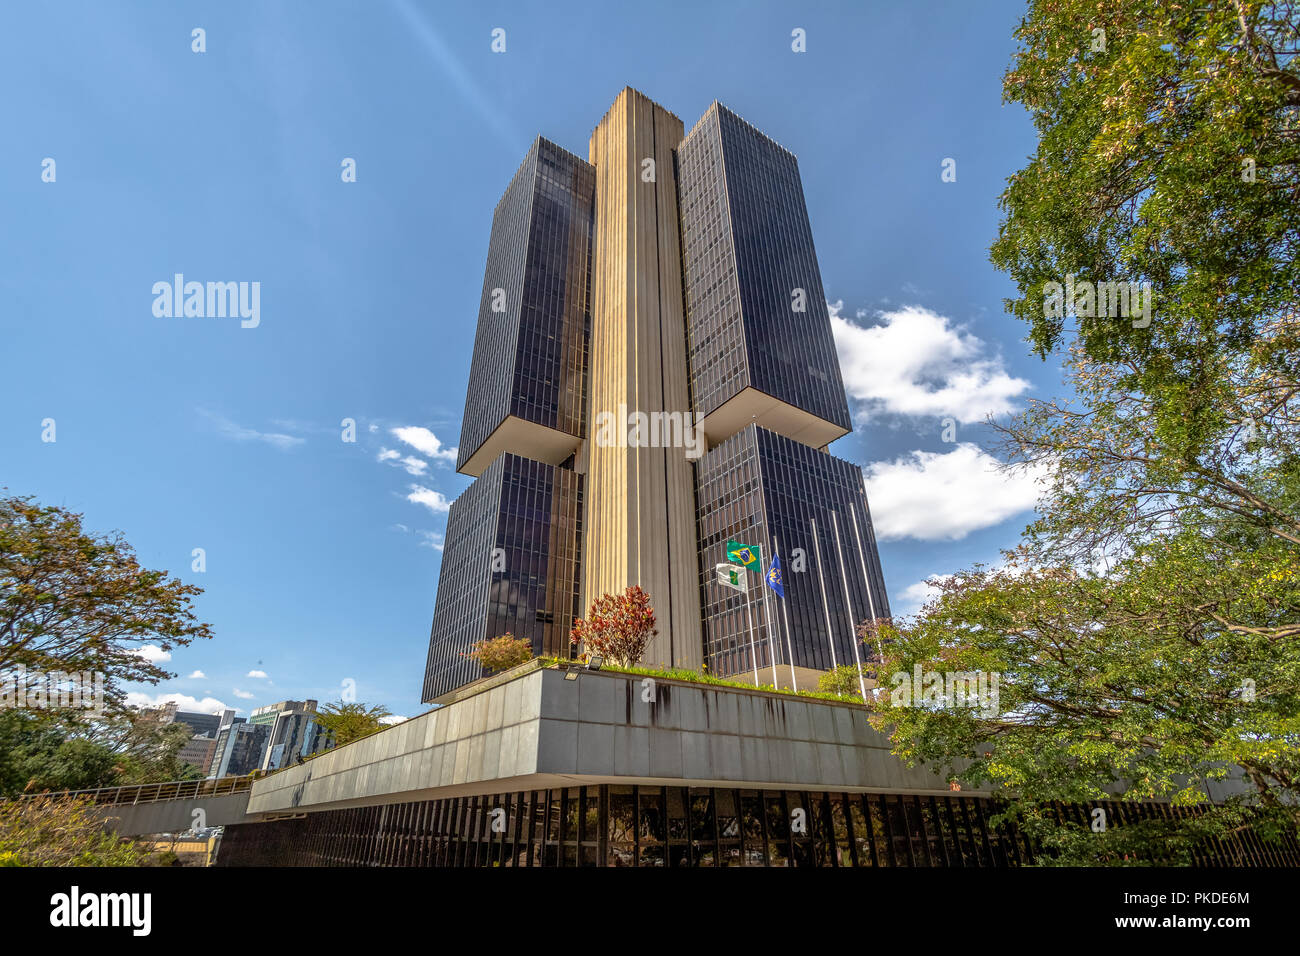 Banca centrale del Brasile headquarters building - Brasilia, Distrito Federal, Brasile Foto Stock